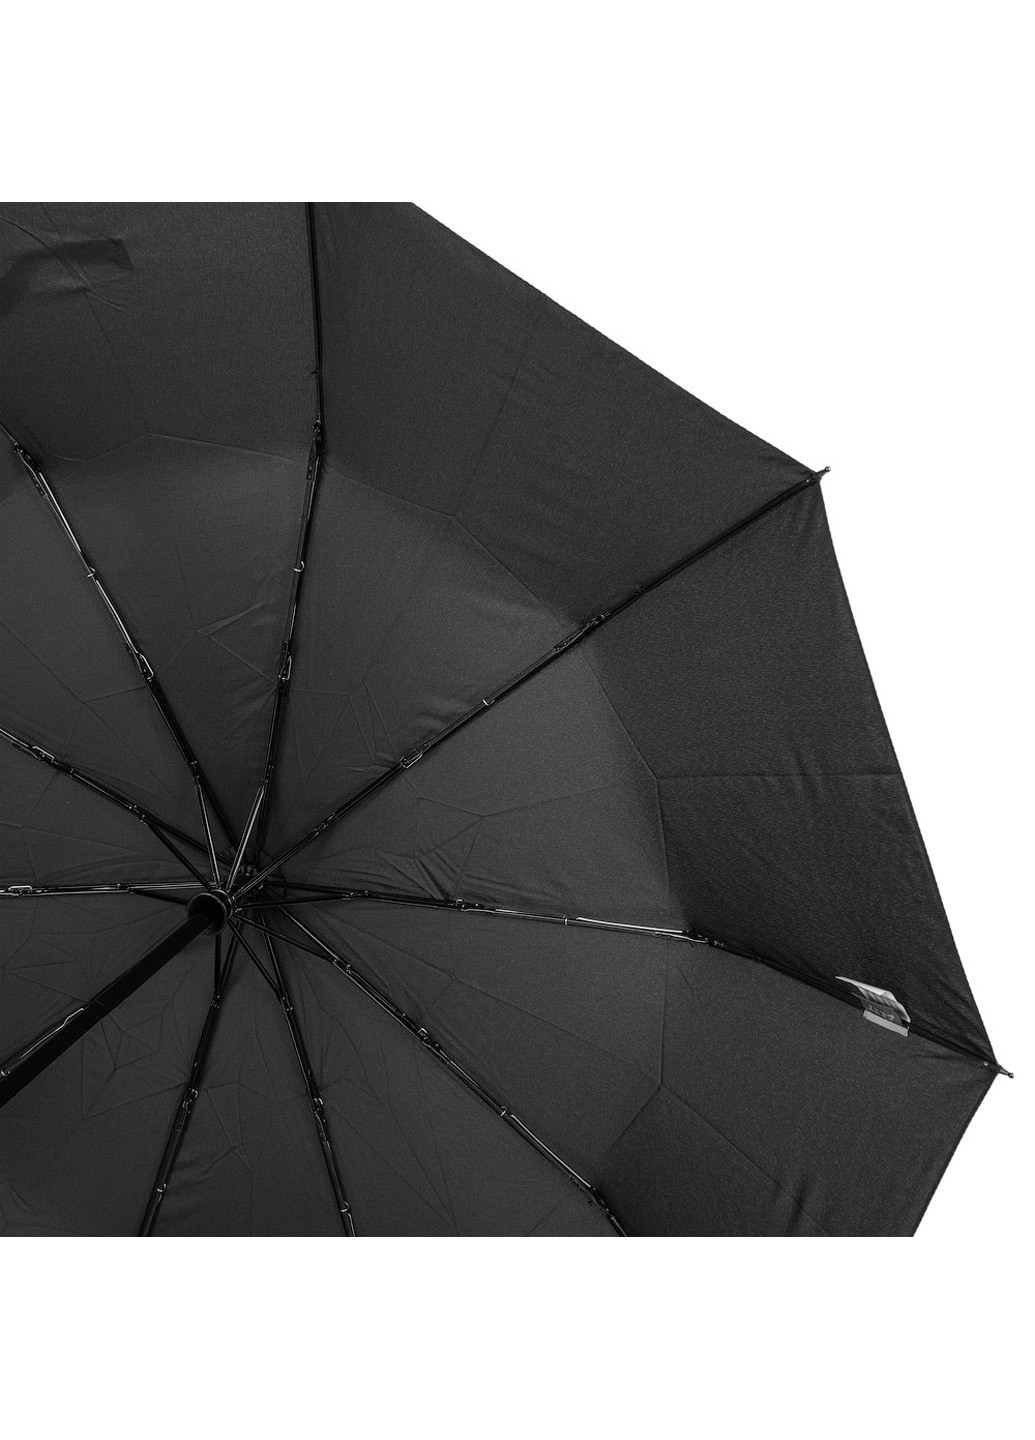 Мужской складной зонт полуавтомат 102 см Zest (194317838)